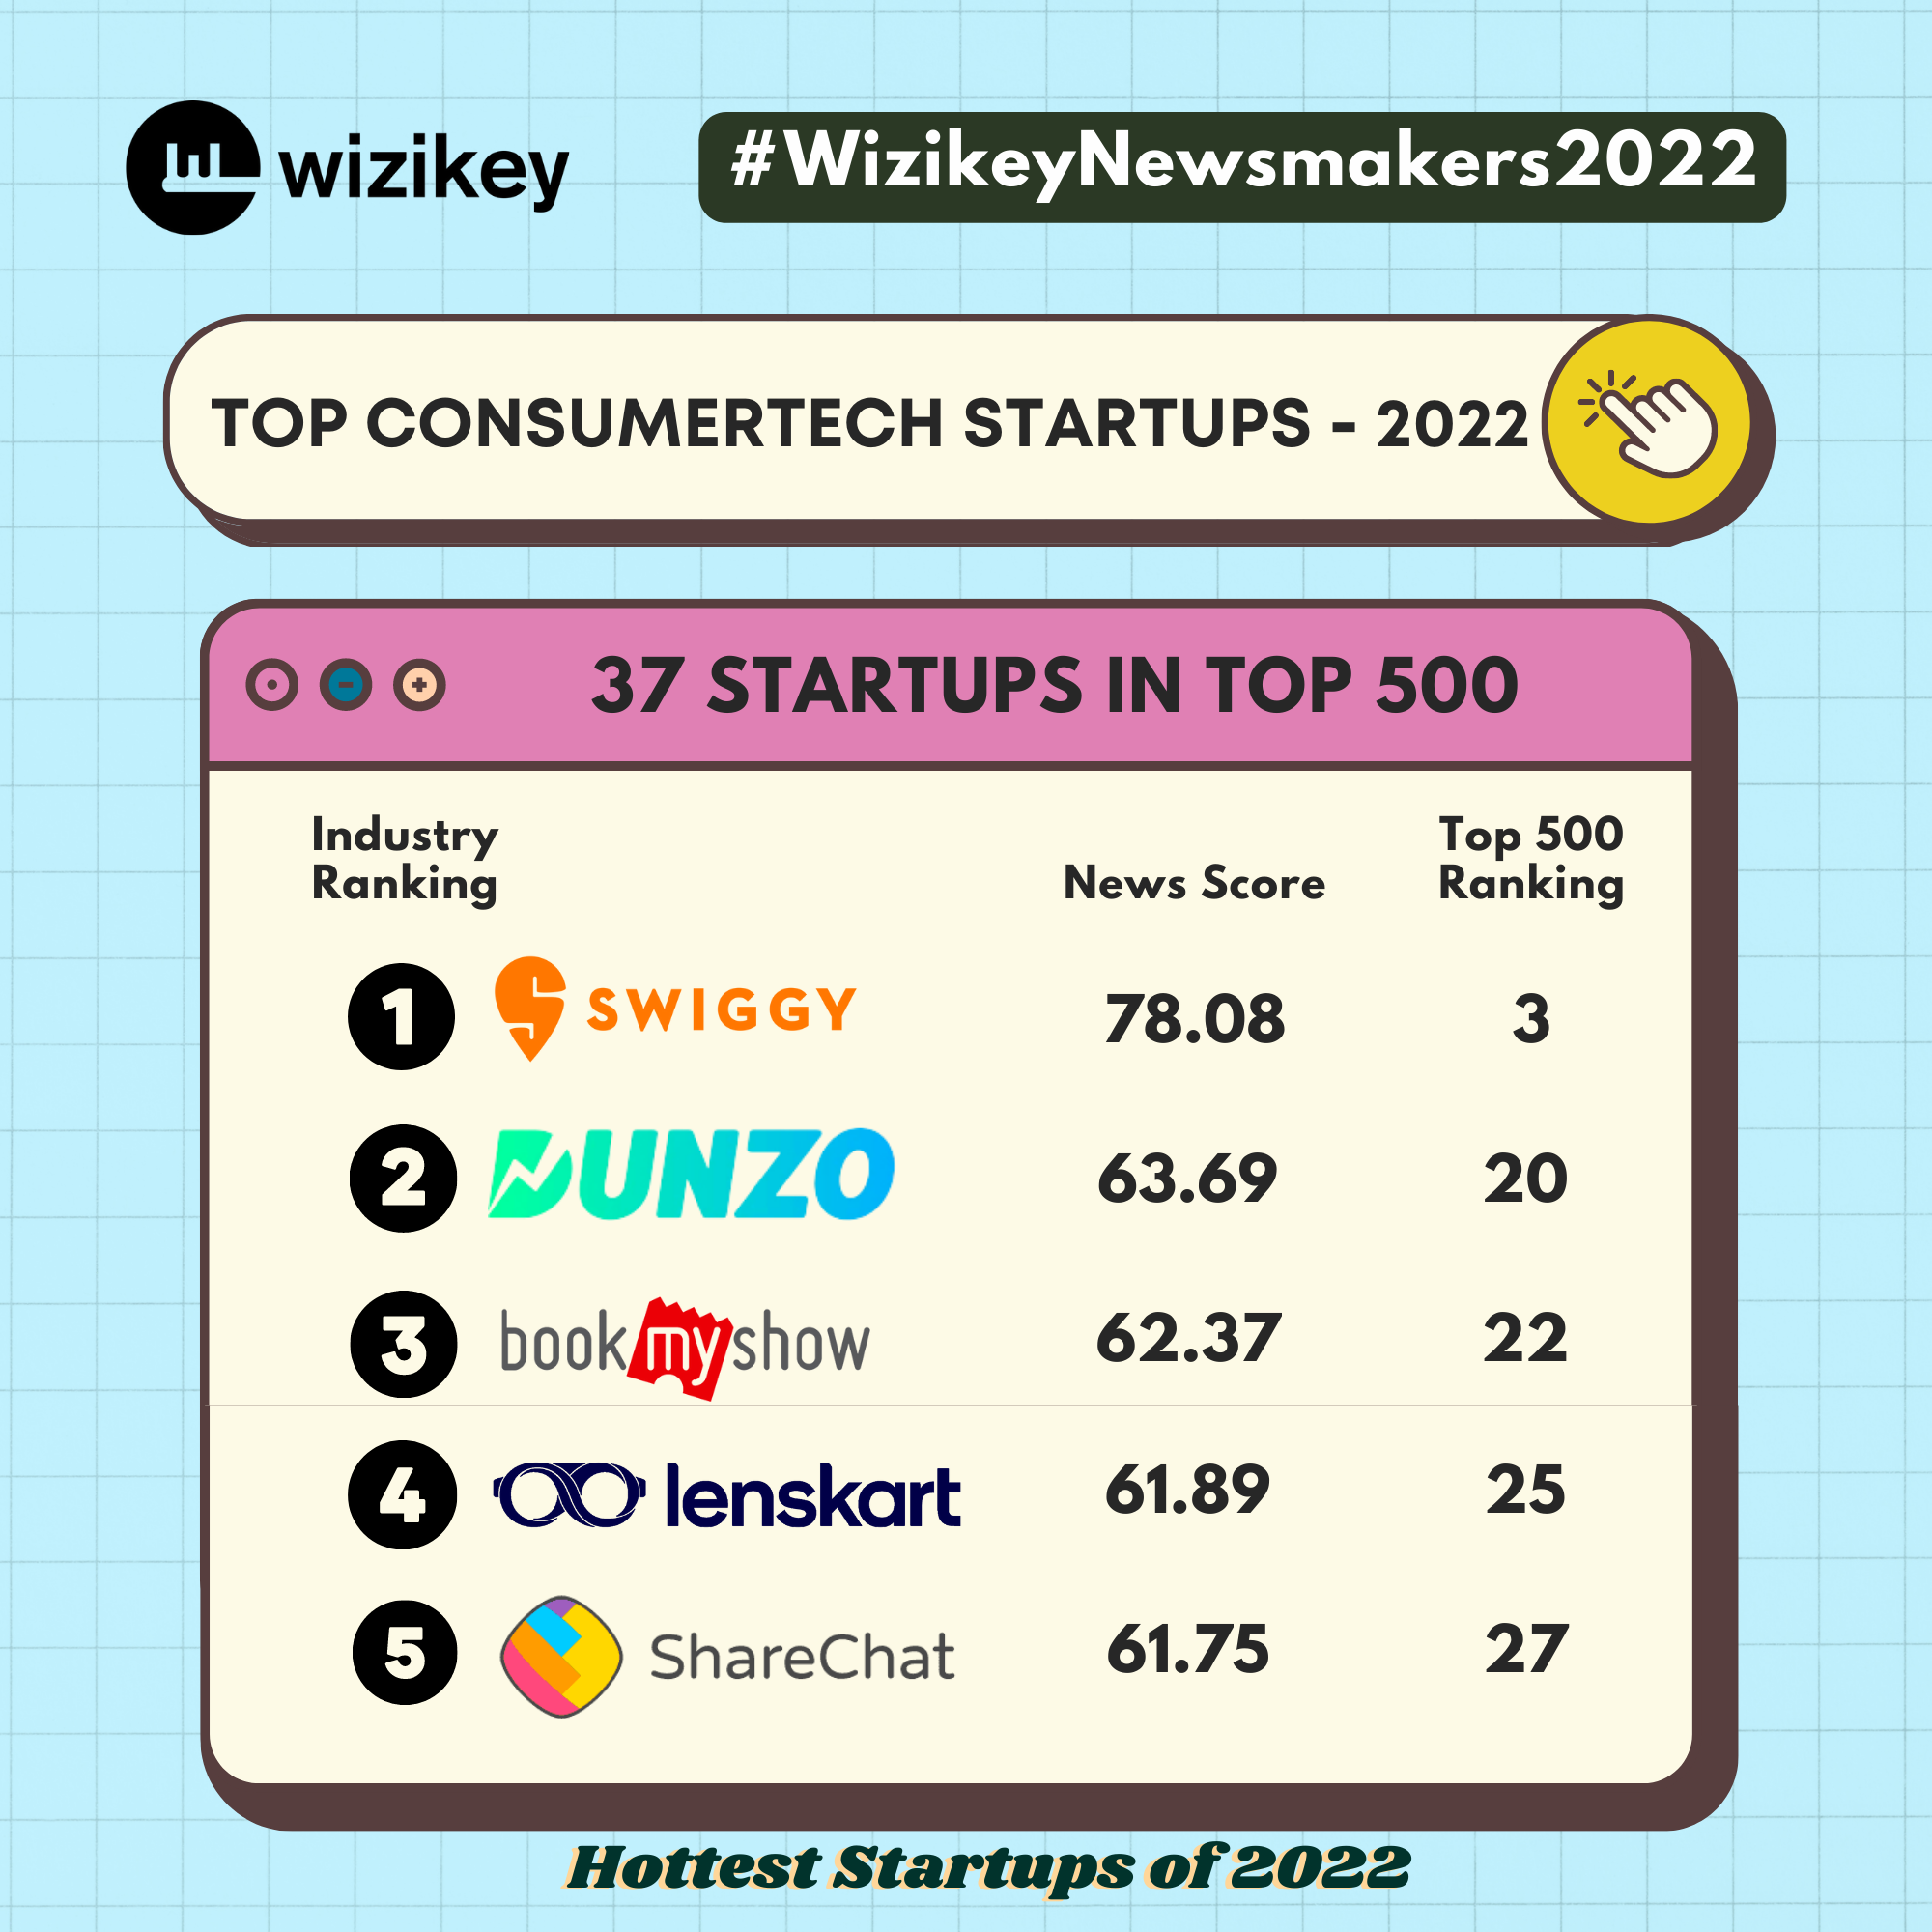 Top ConsumerTech Startups